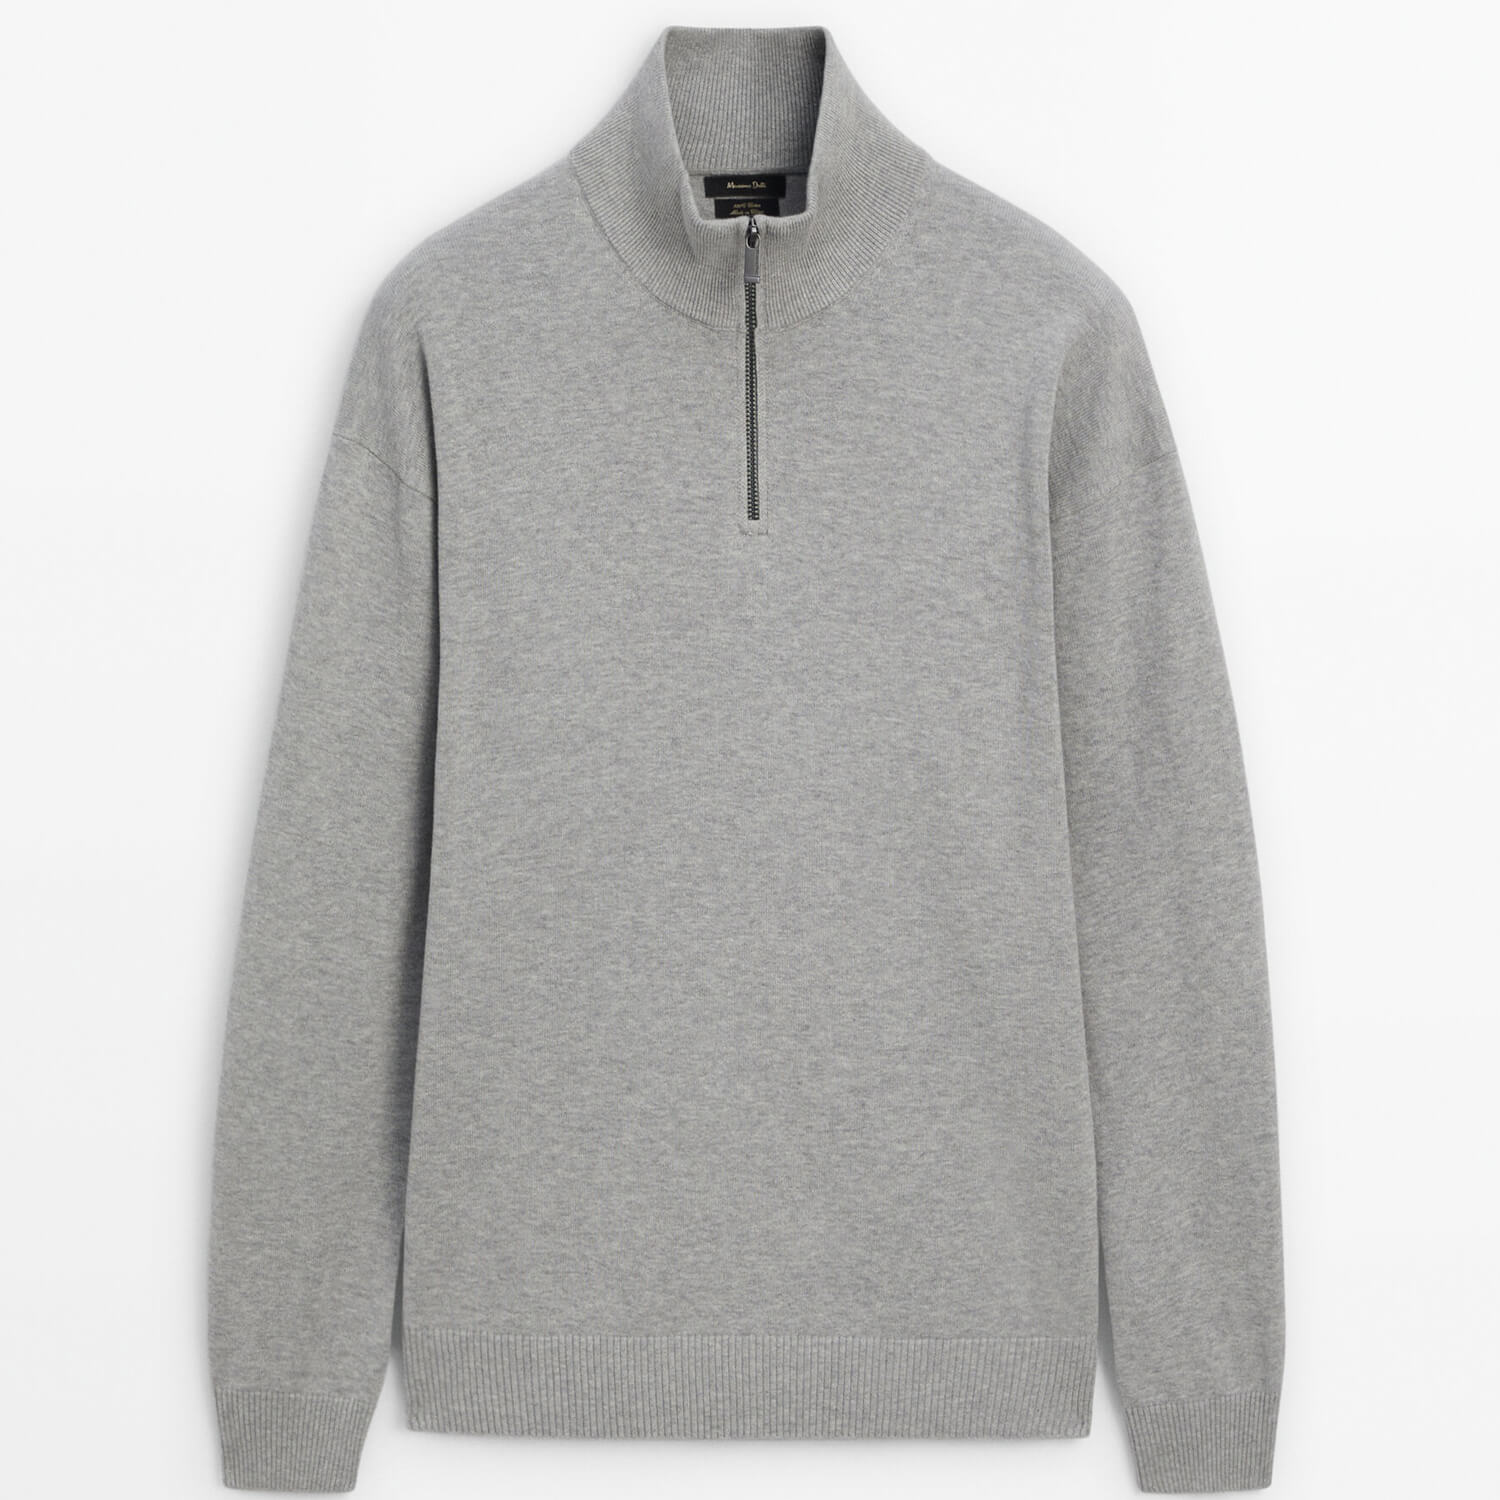 Свитер Massimo Dutti Mock Neck Knit Sweater, серый свитер massimo dutti v neck sweater чёрный